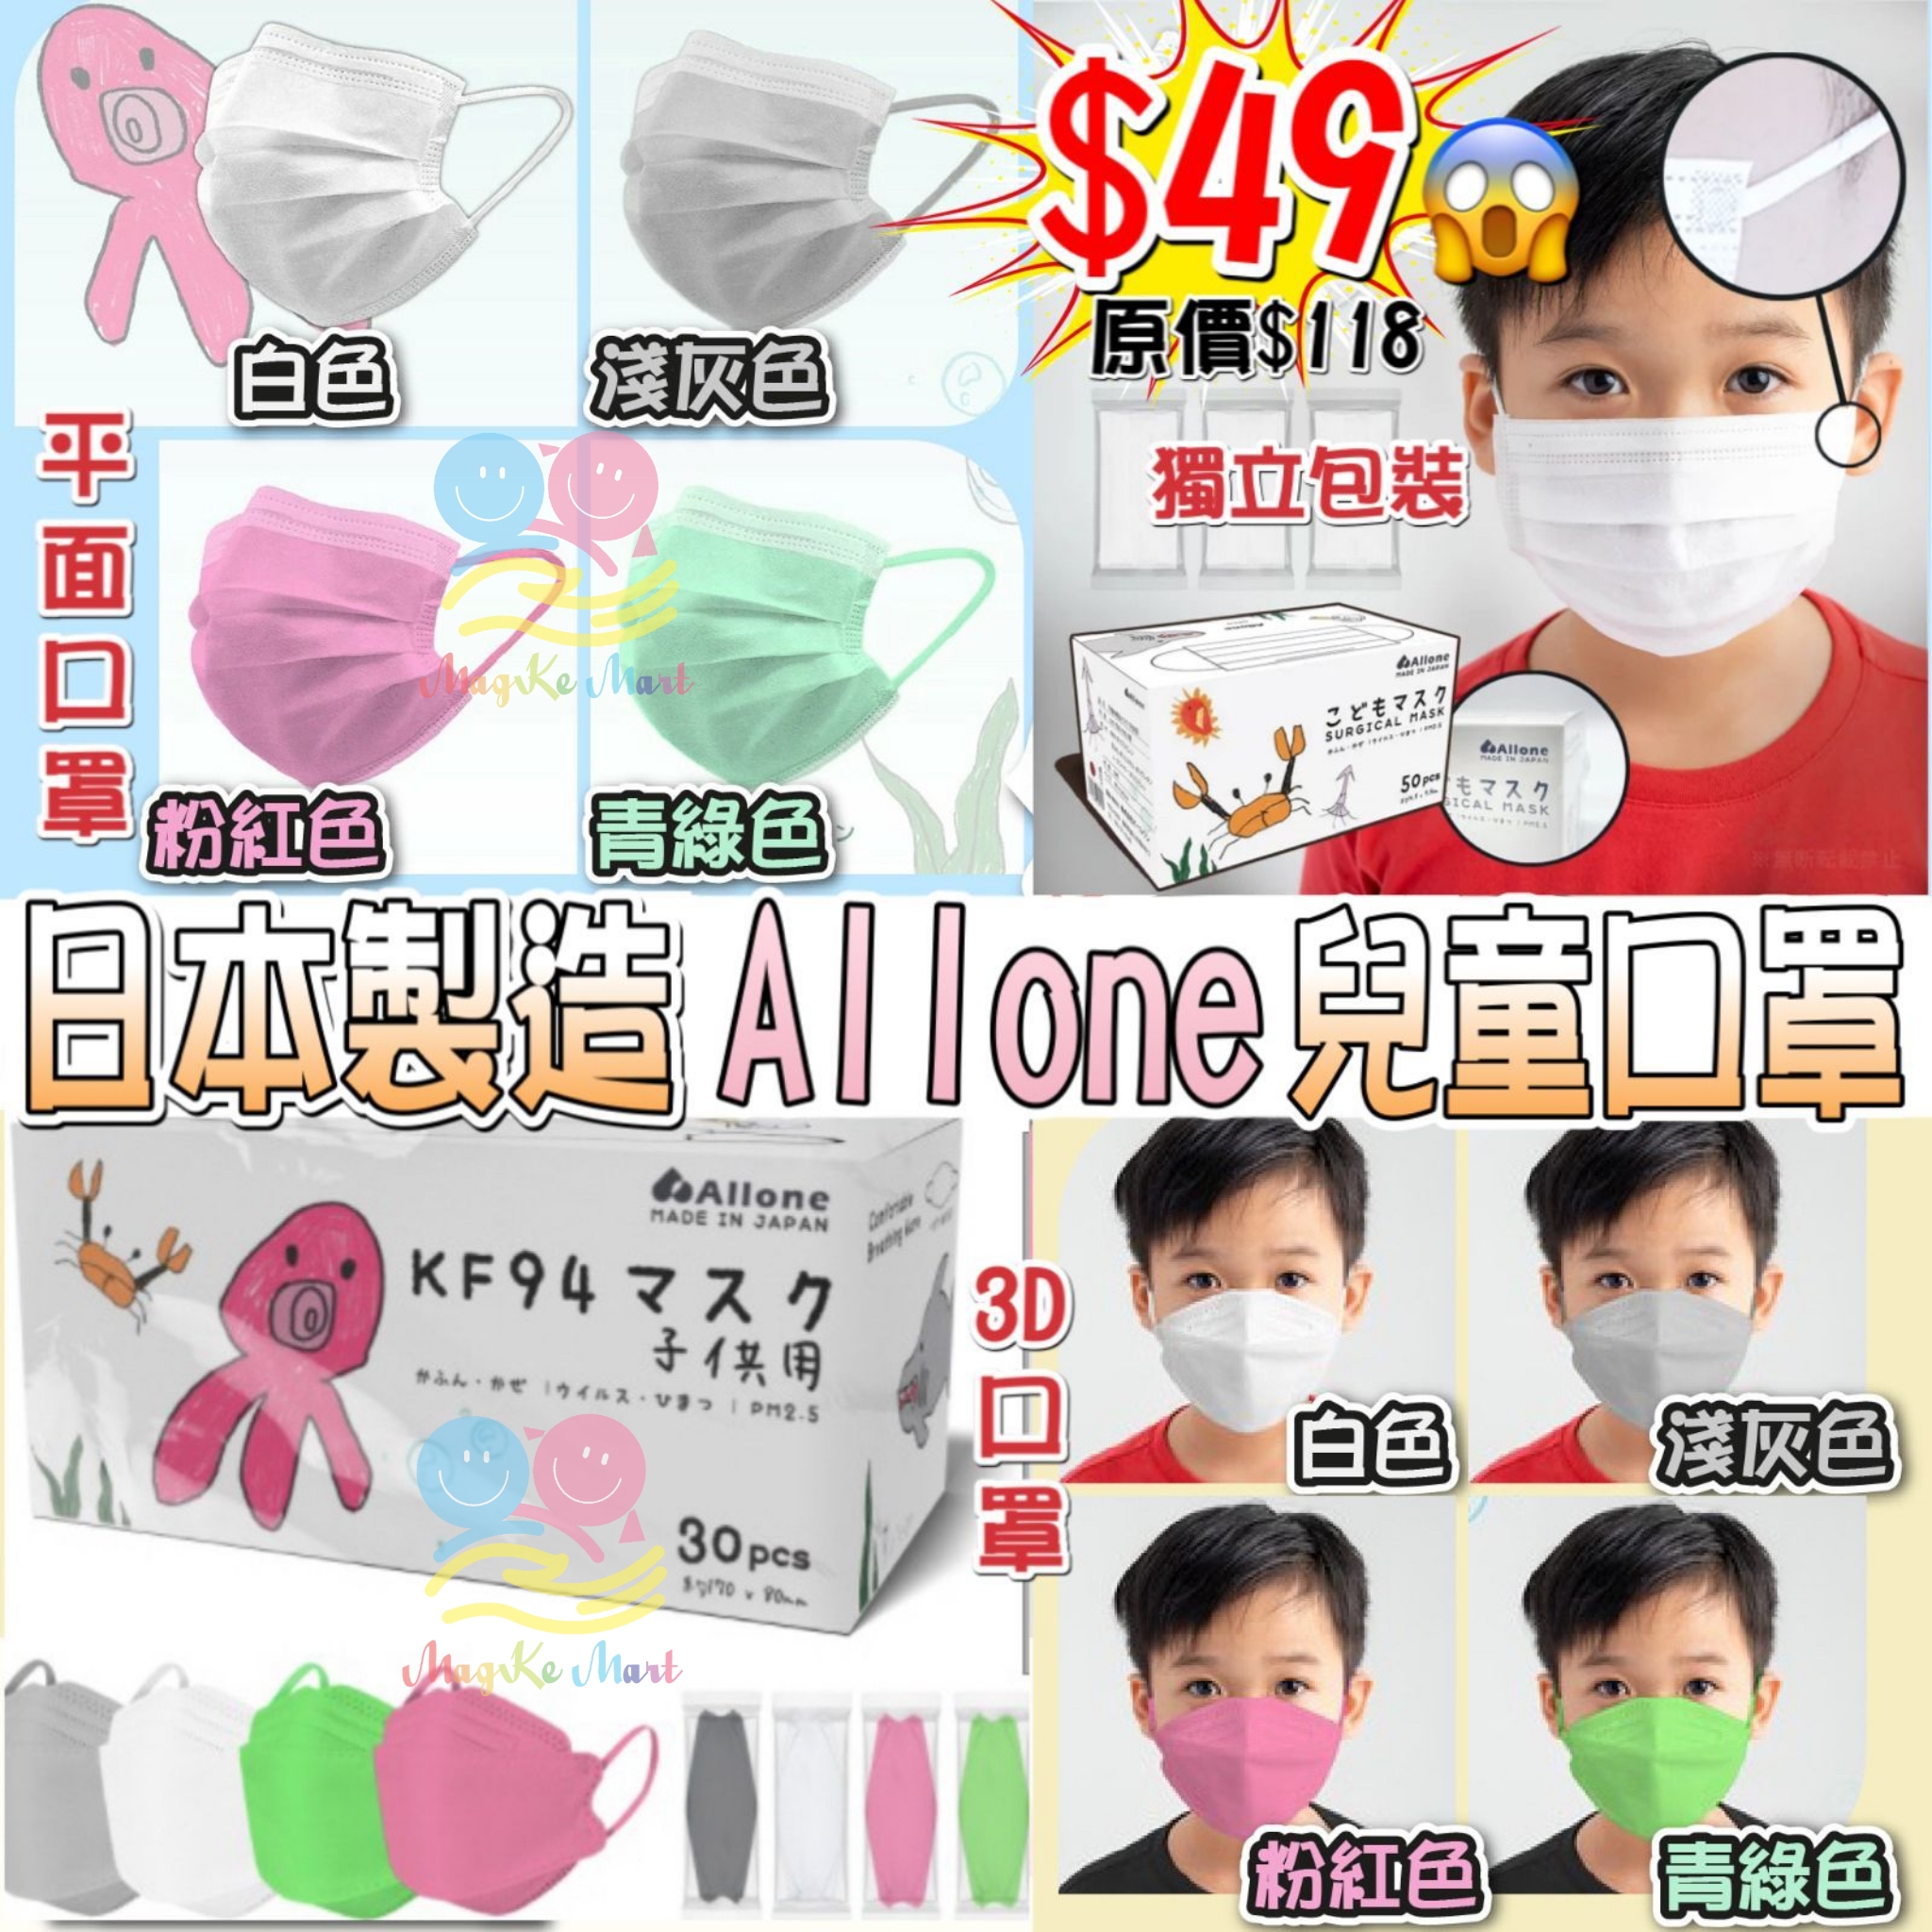 日本製 Allone 高密度不織布兒童口罩系列(獨立包裝)